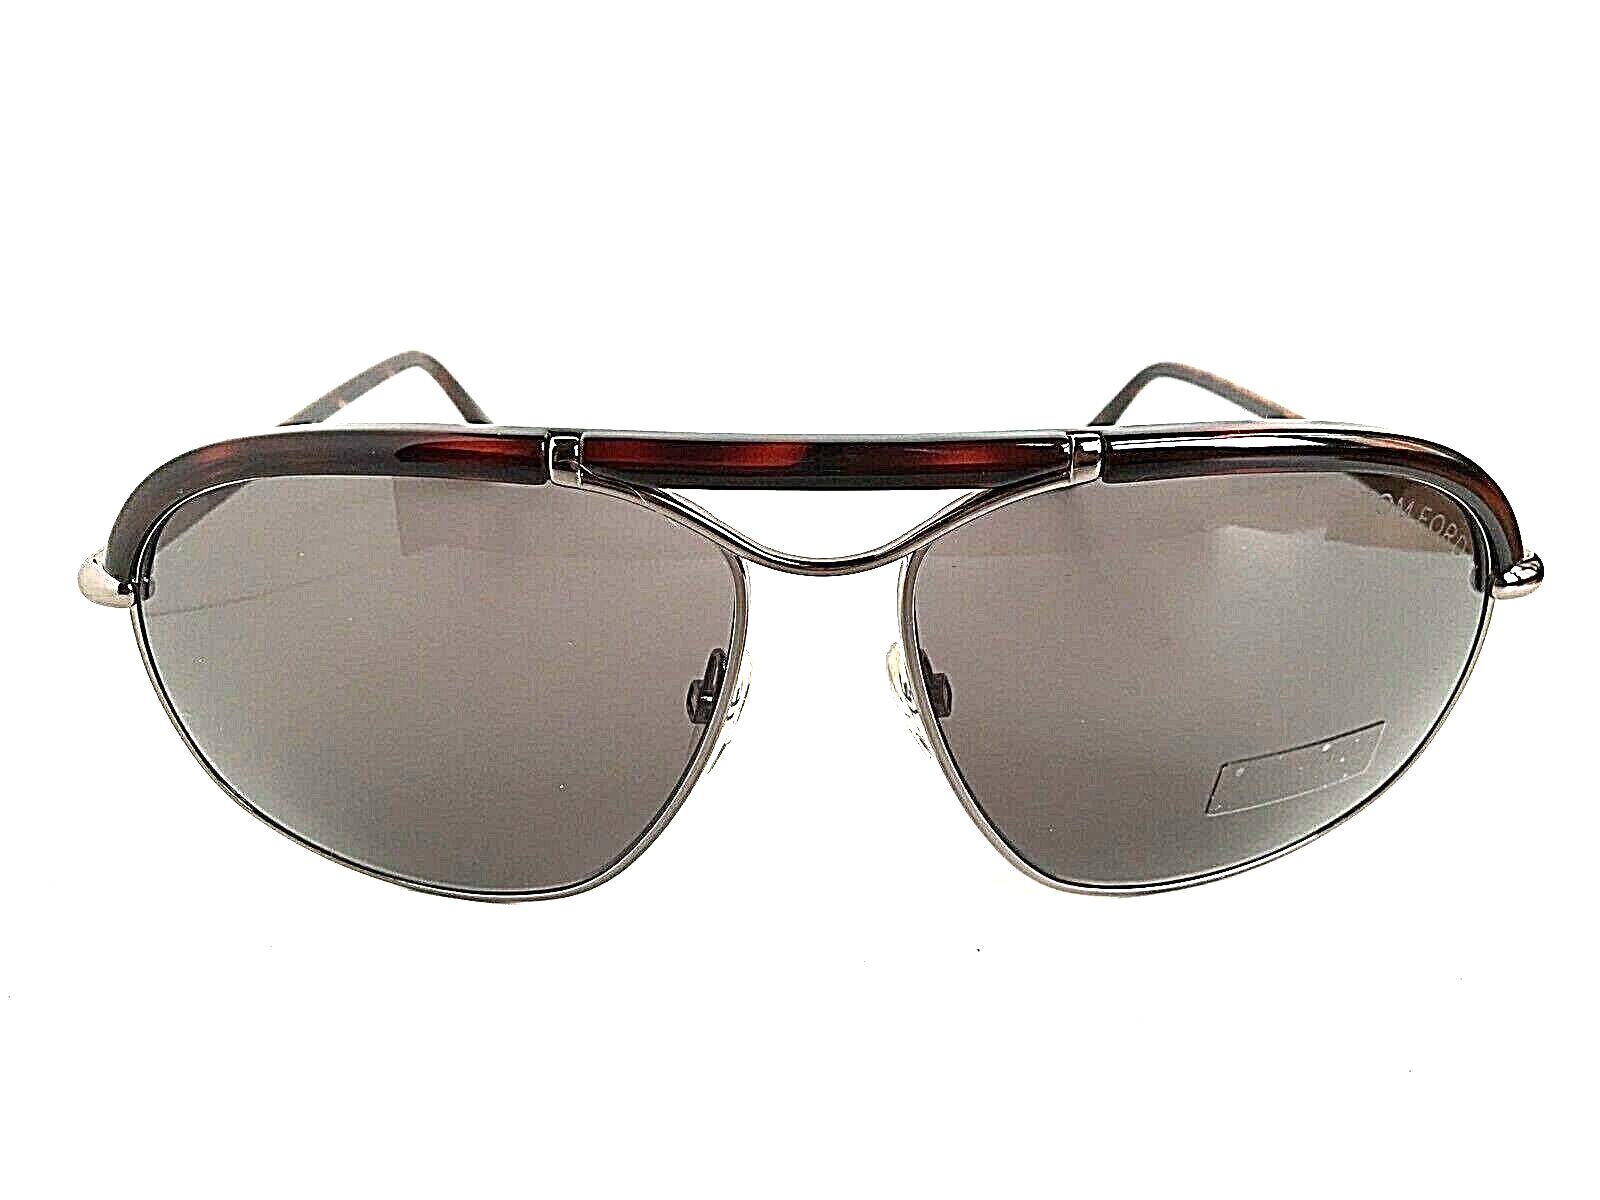 New Tom Ford Tortoise 59mm Men's Sunglasses Italy - $189.99